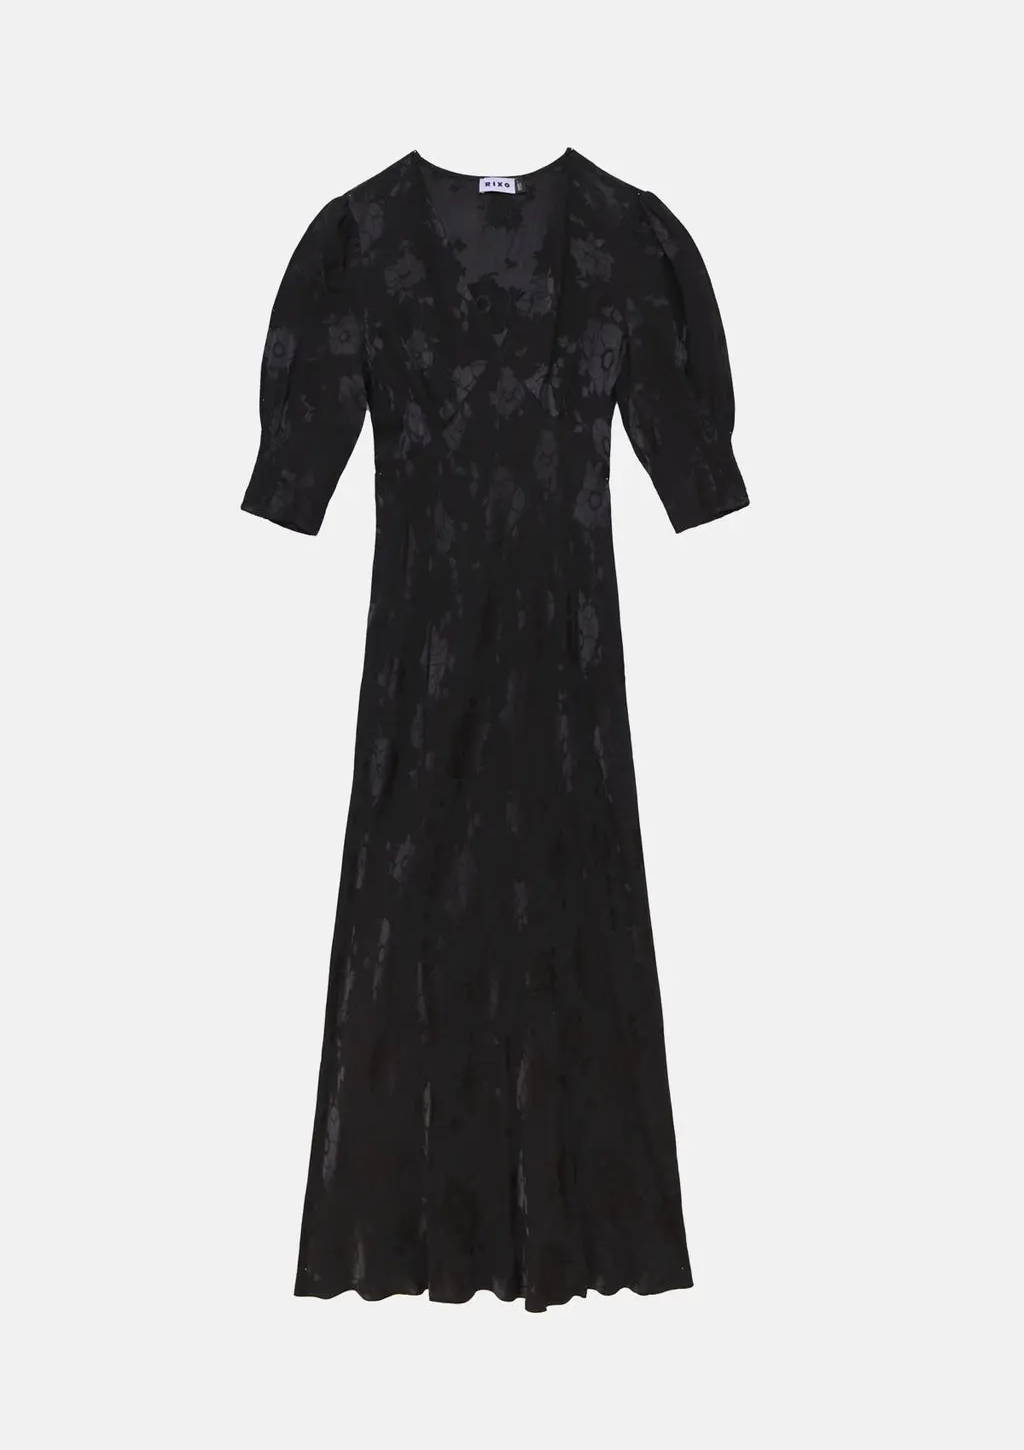 Rixo Zadie Dress in Black Poppy Jacquard.